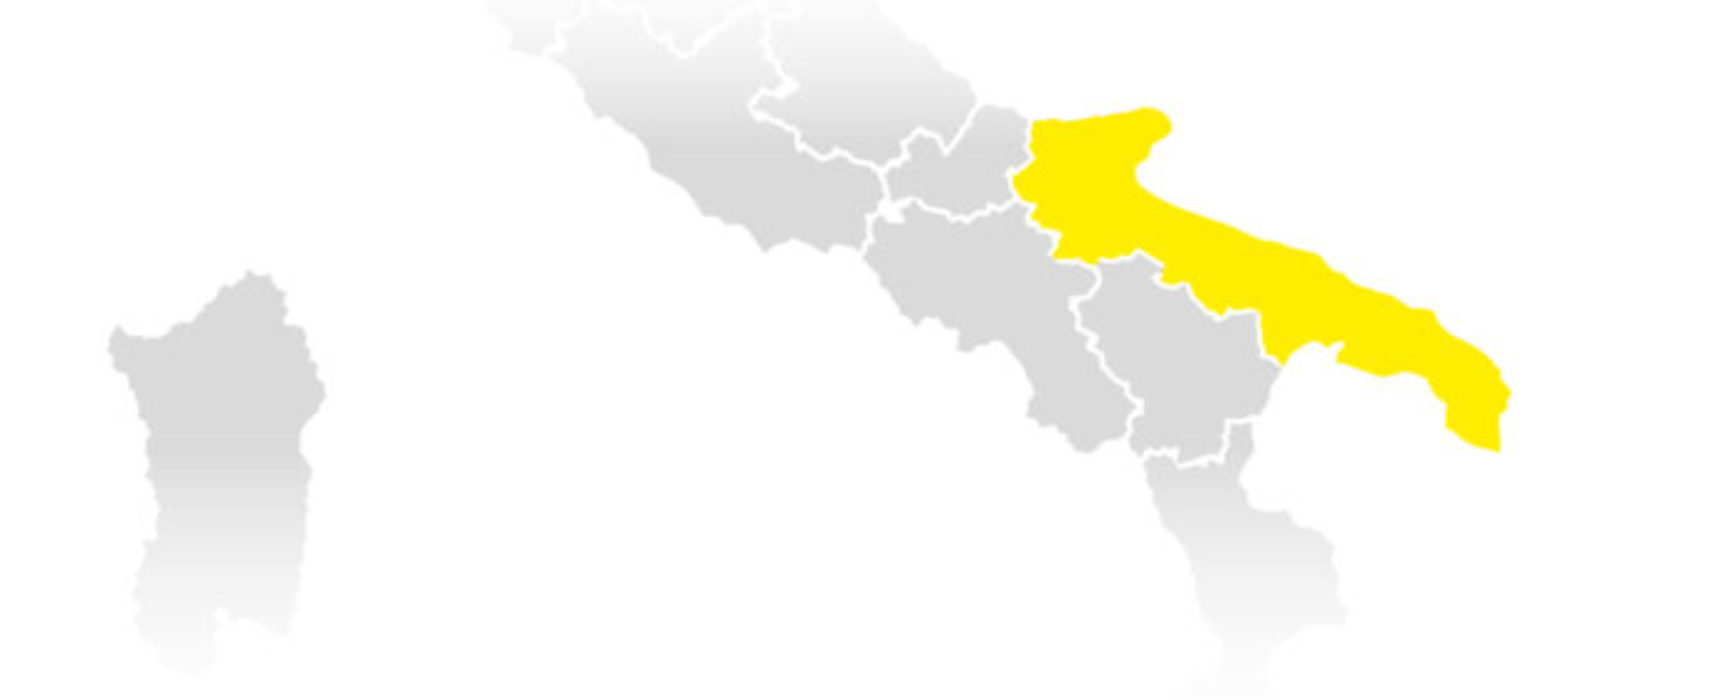 Decisione definitiva: la Puglia in zona gialla dall’11 febbraio